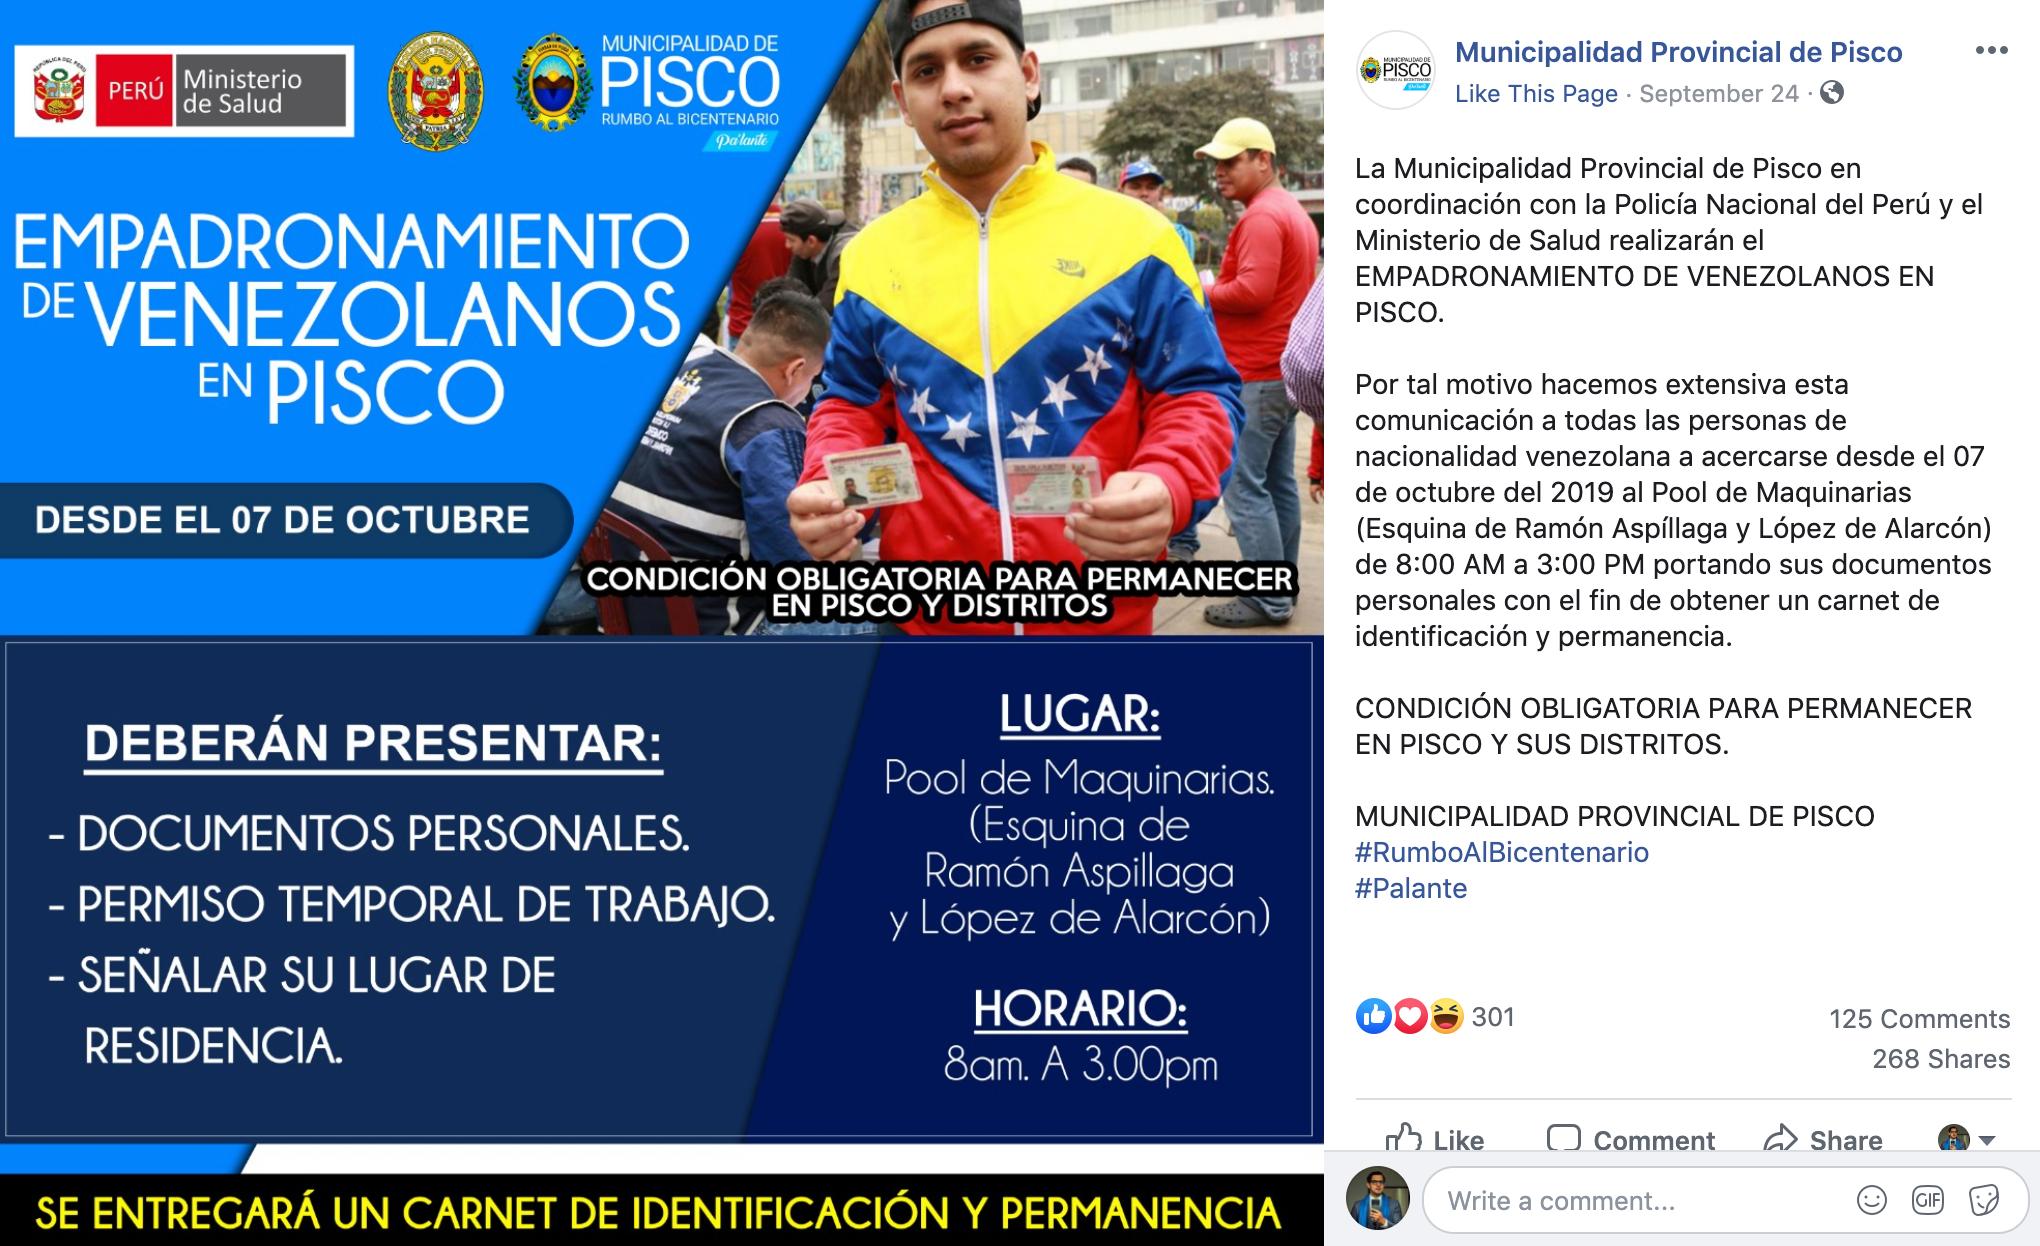 "Condición obligatoria para permanecer en Pisco y distritos". Nos fuimos al carajo. Foto: Captura/Twitter/@disalch